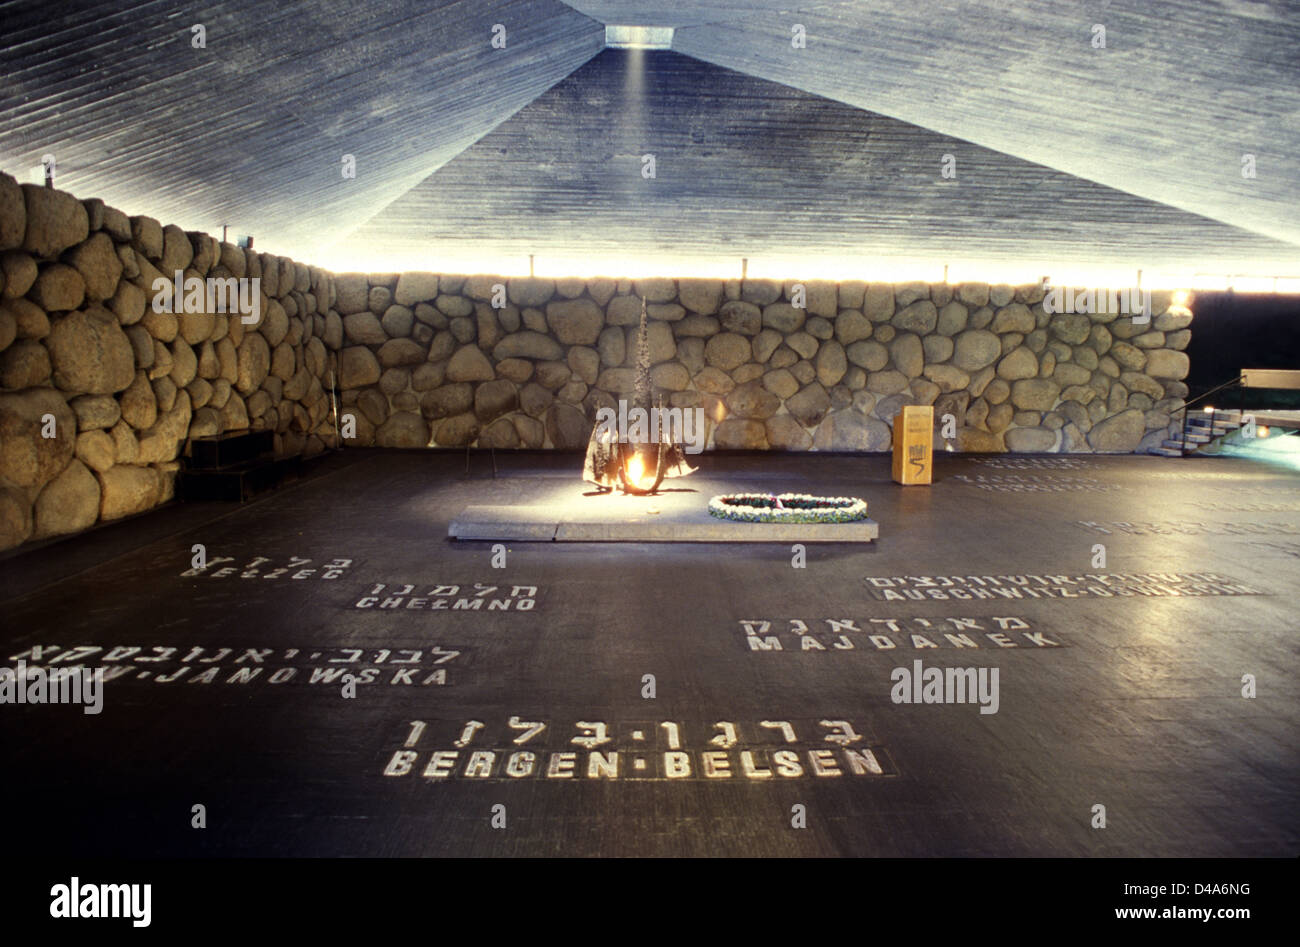 Die Flamme und die Halle der Erinnerung mit vernichtungslagern Namen in Yad Vashem Gedenkstätte für den Holocaust in Jerusalem Israel Stockfoto